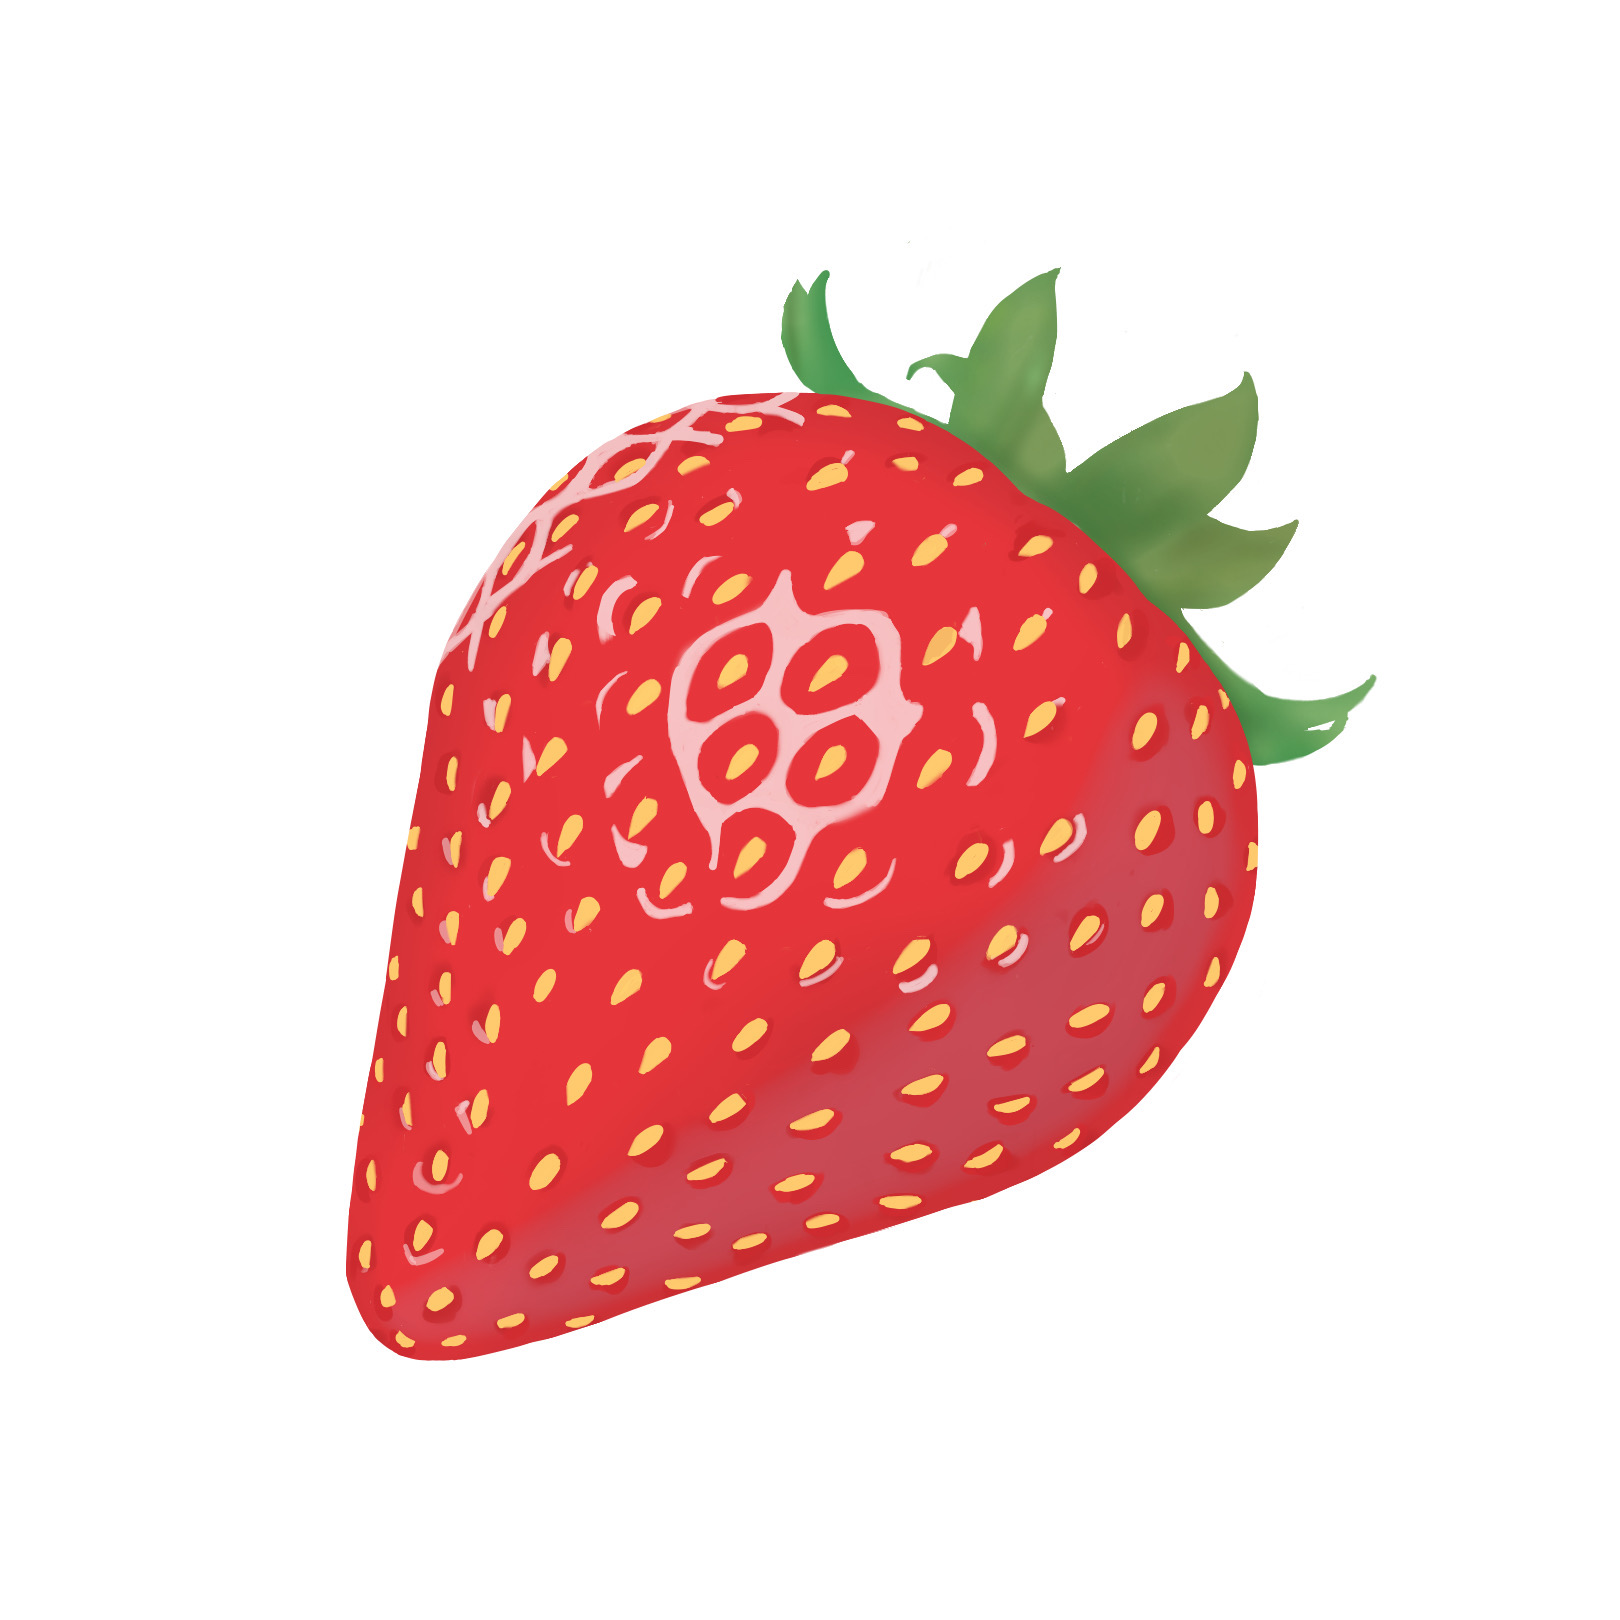 Cómo dibujar una fresa o frutilla